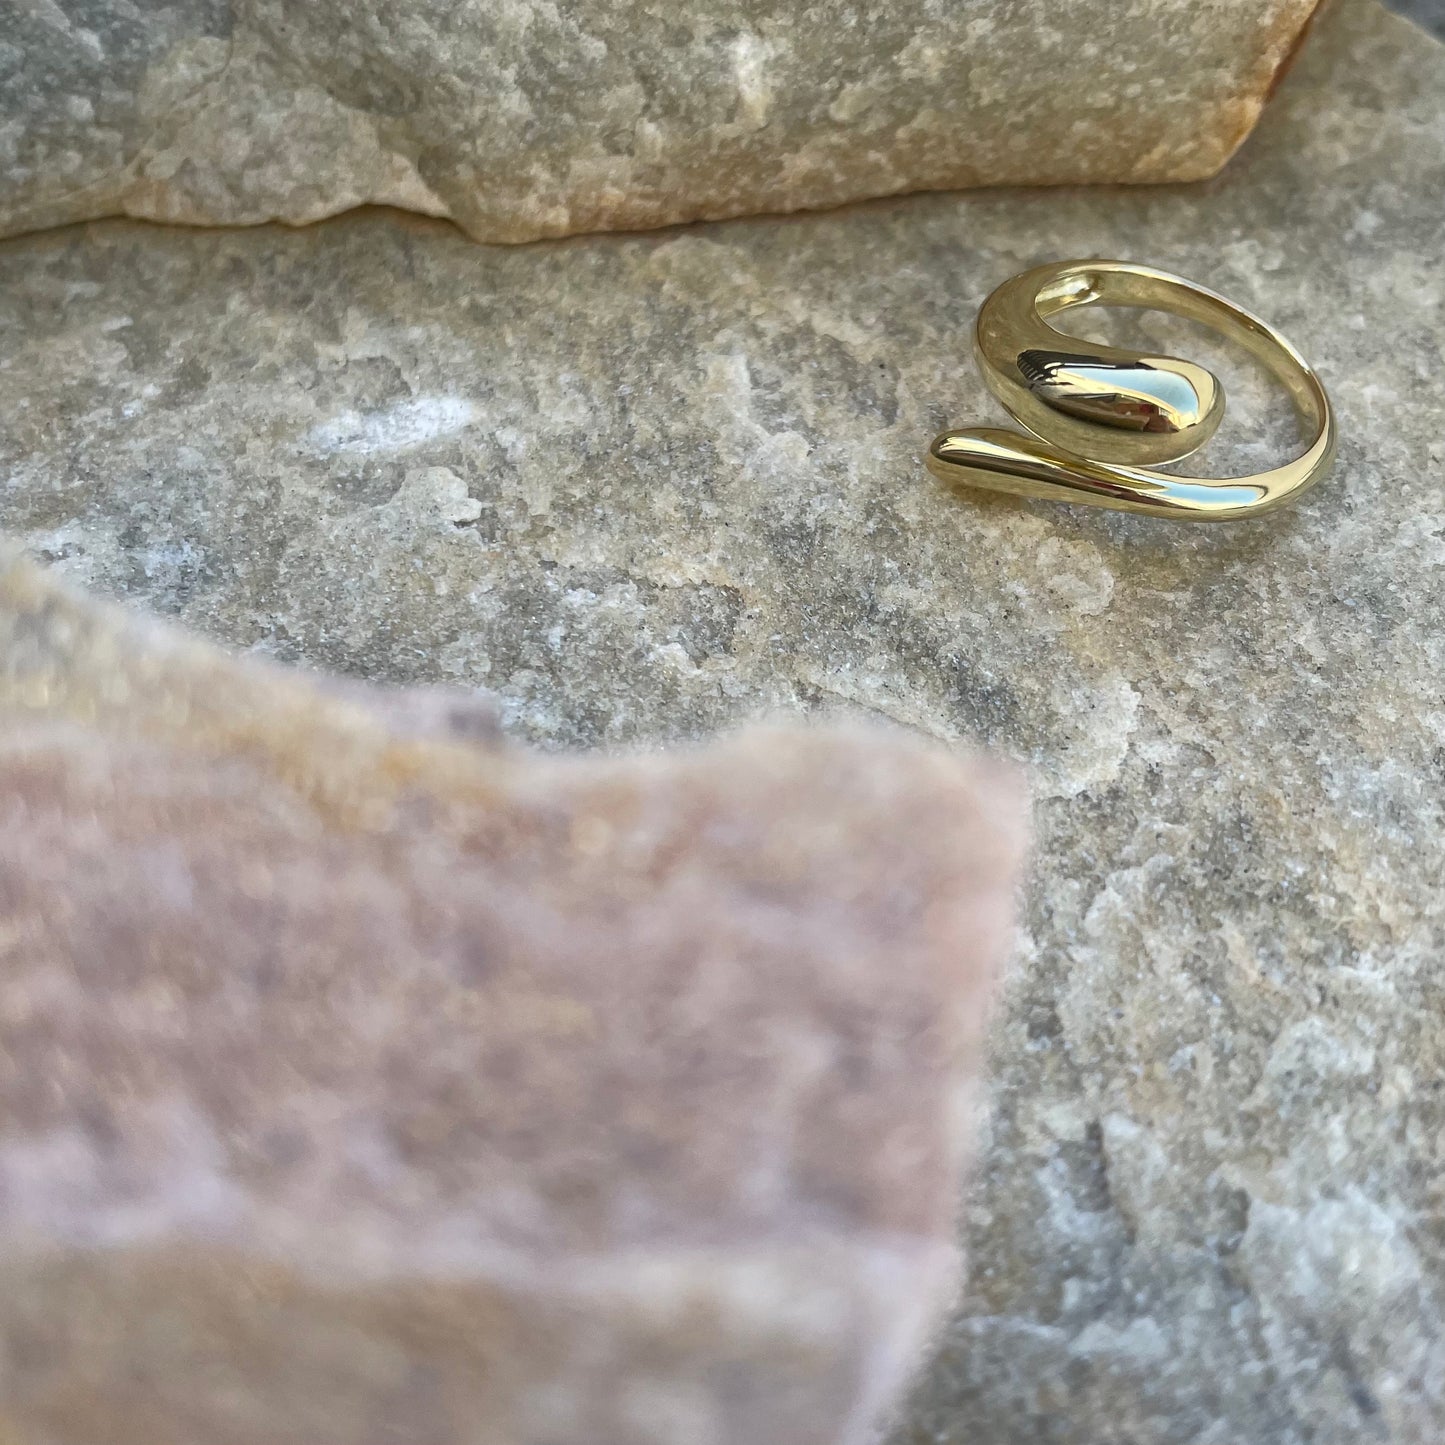 Golden Snake Ring